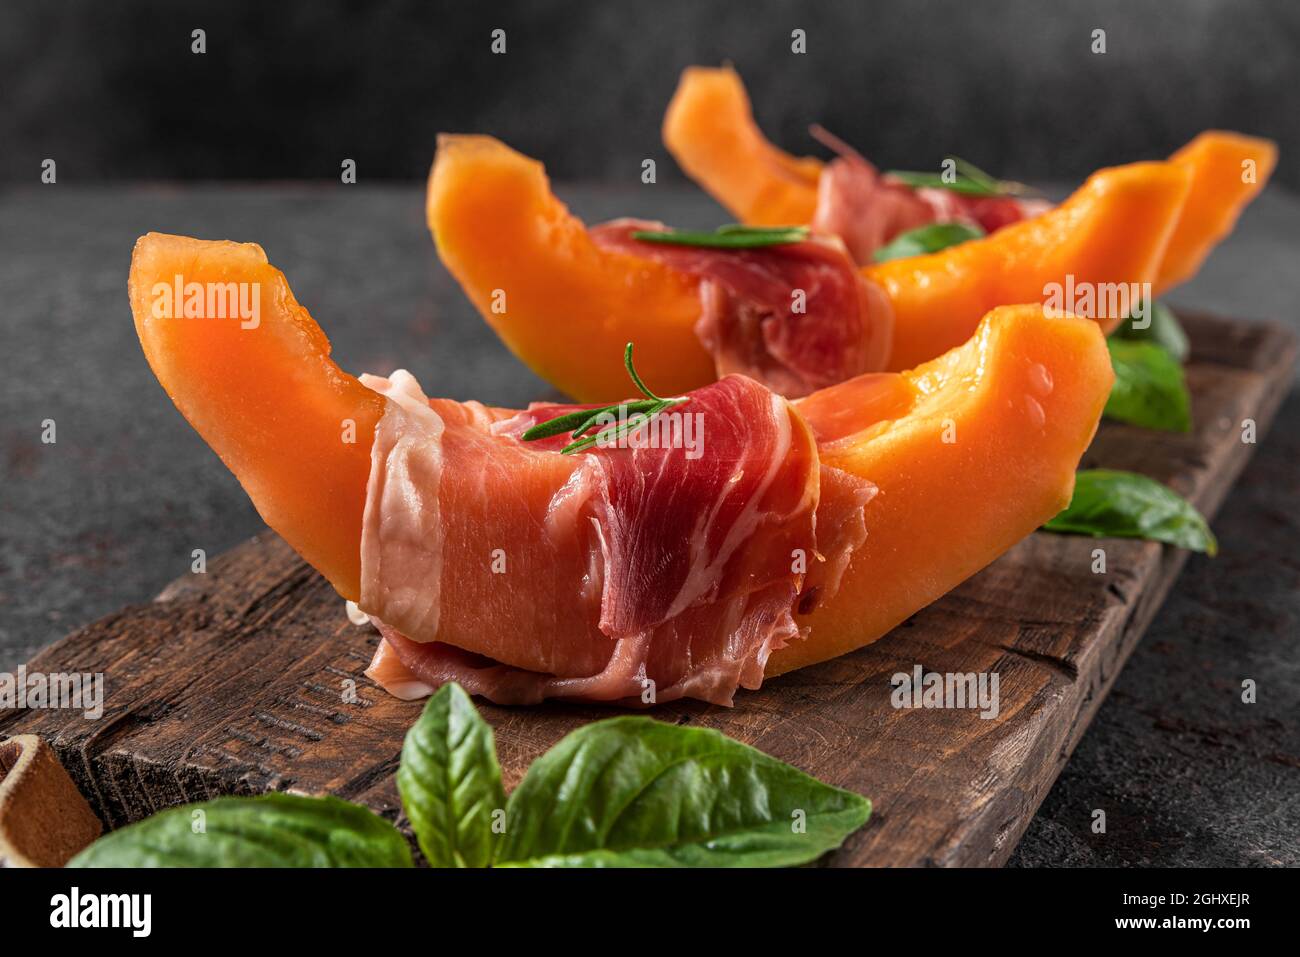 Melone cantalupo fresco con prosciutto e basilico su sfondo nero. Antipasto di cucina italiana. Primo piano Foto Stock